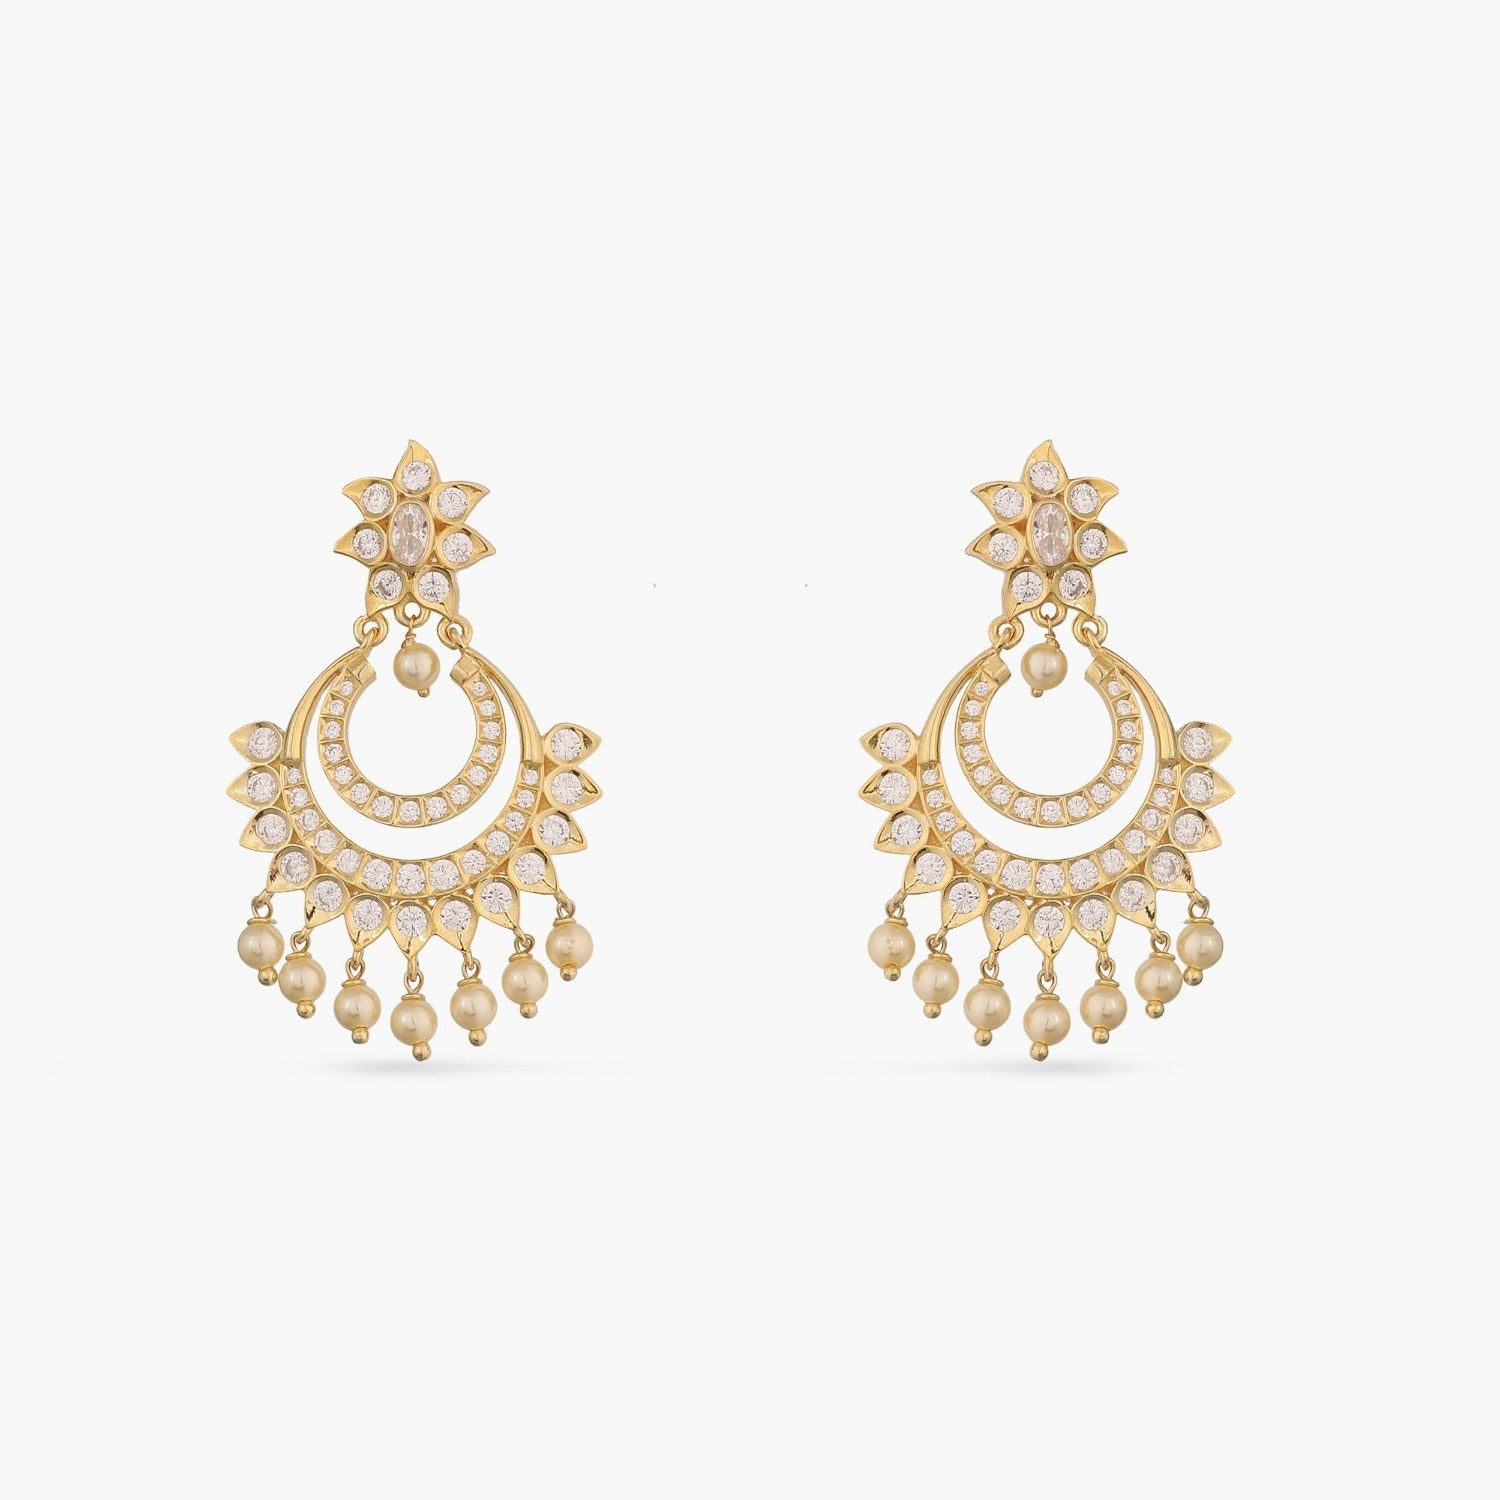 Shop Indian Silver Earrings Online - 925 Silver | Paksha